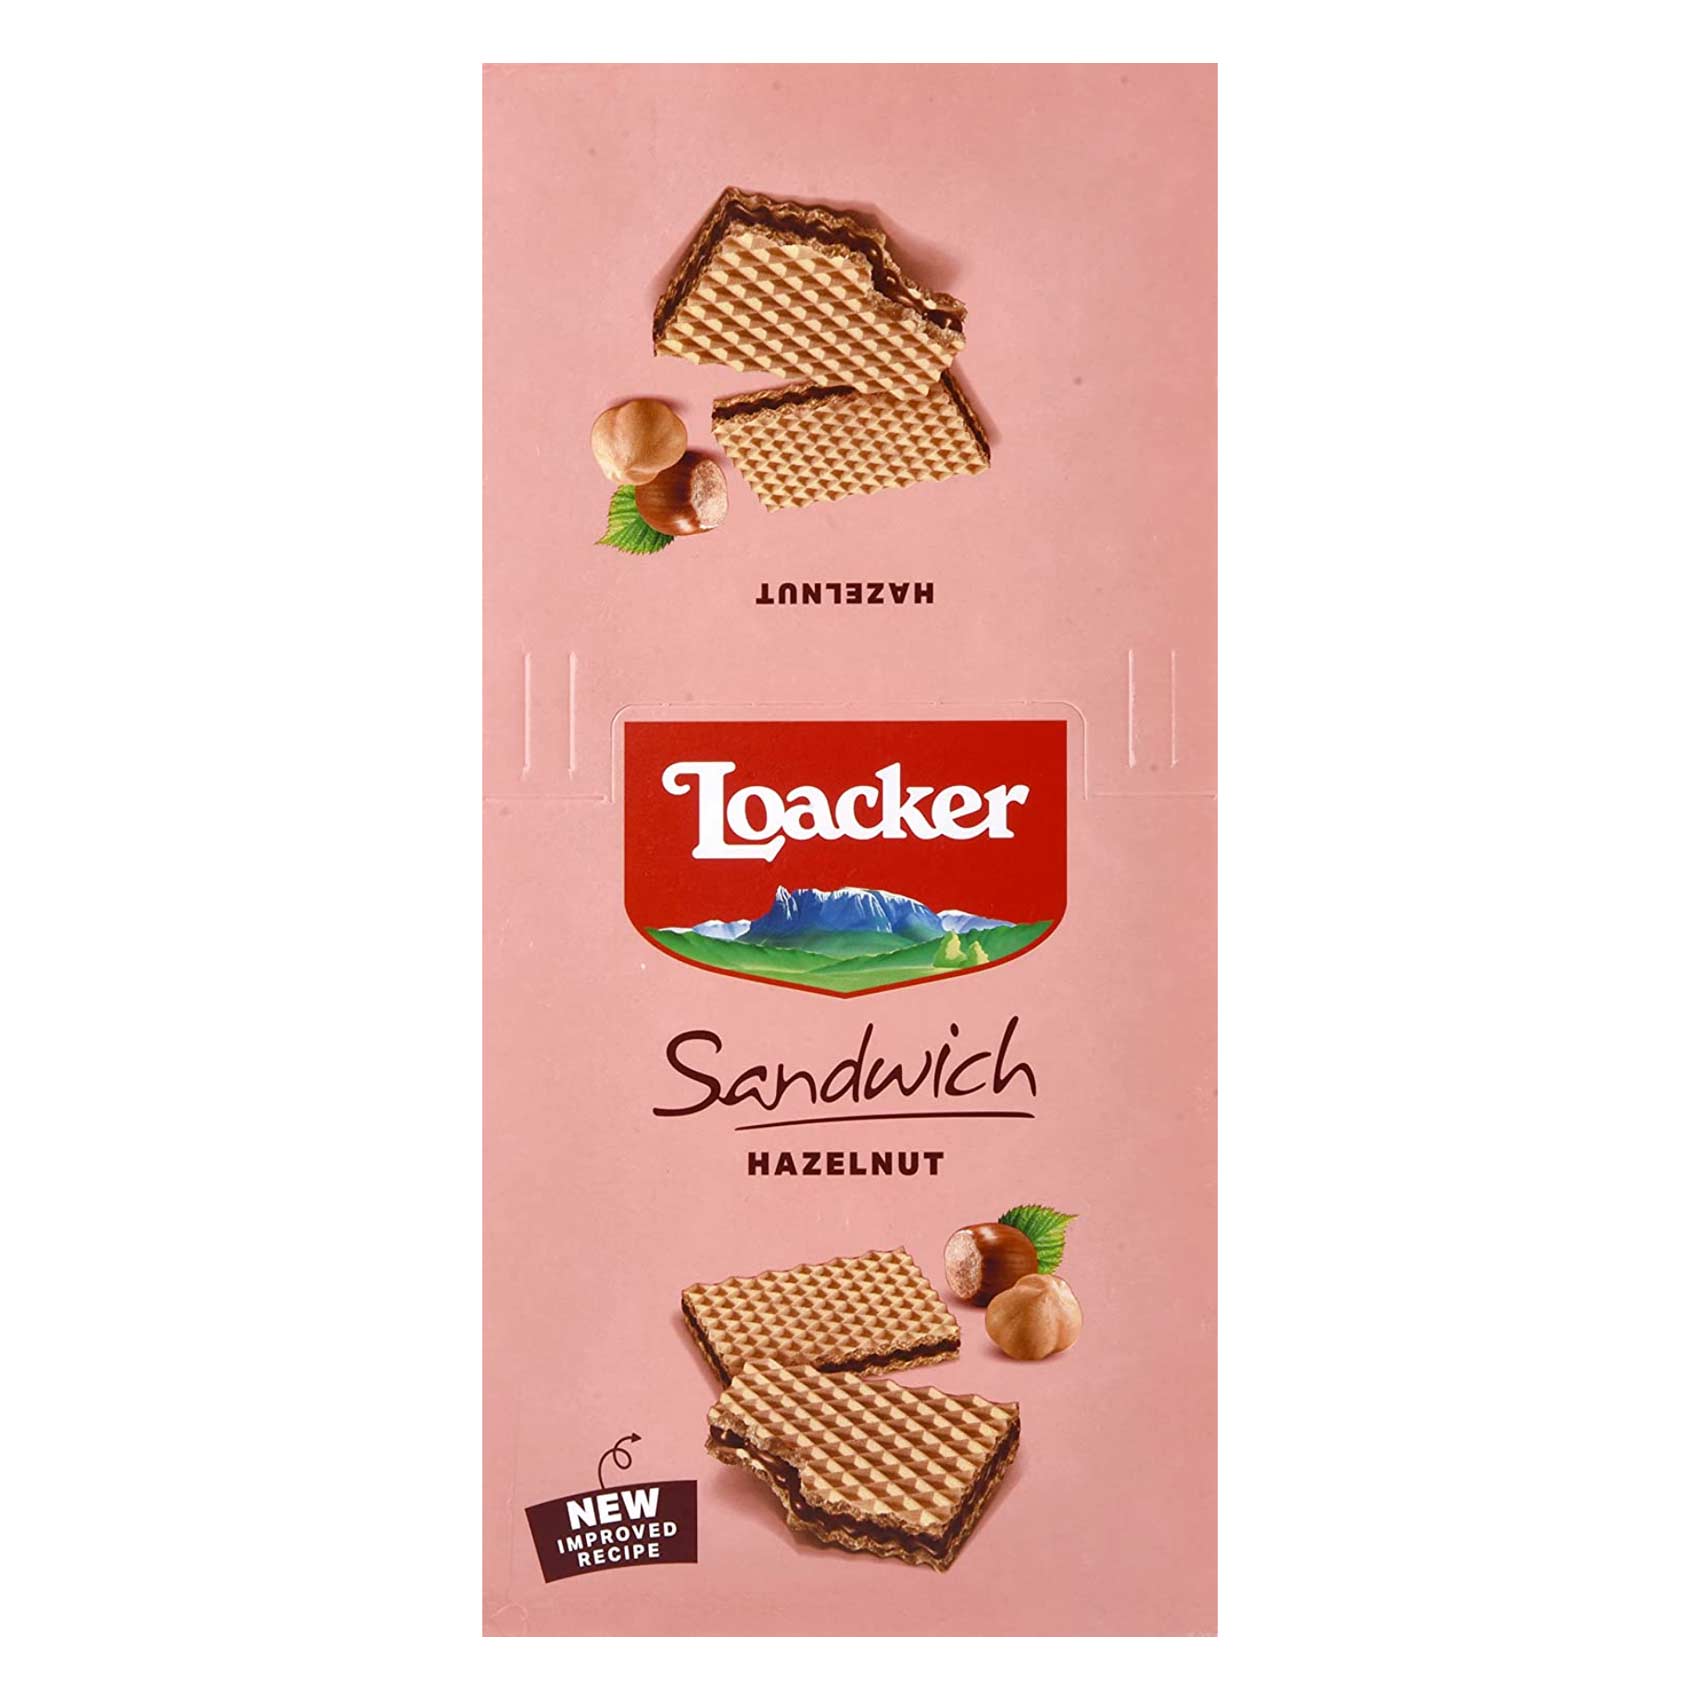 Loacker Hazelnut Sandwich Wafer 75g